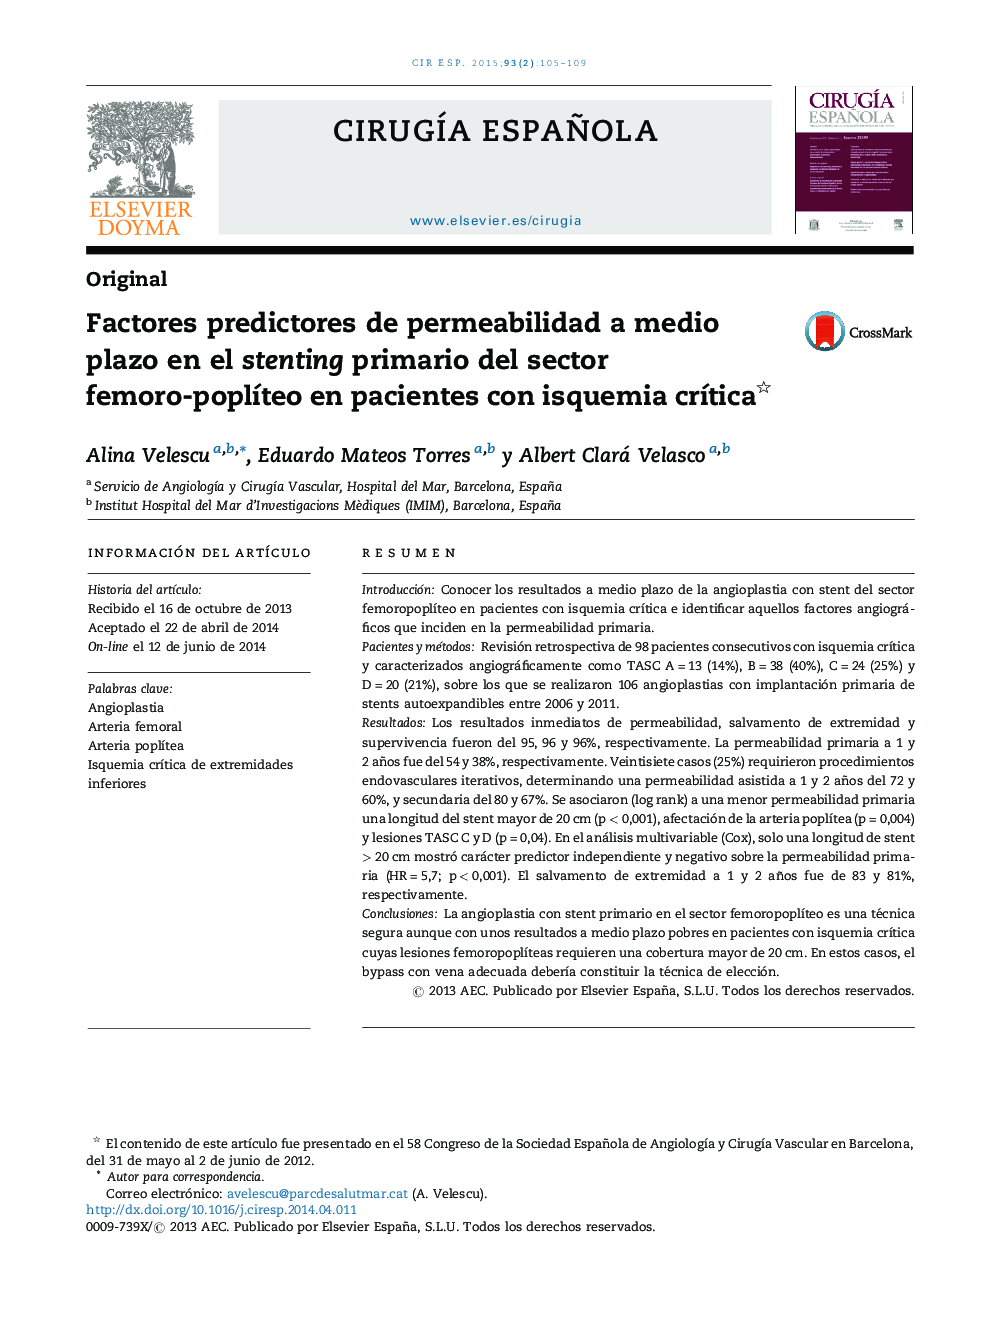 Factores predictores de permeabilidad a medio plazo en el stenting primario del sector femoro-poplíteo en pacientes con isquemia crítica 